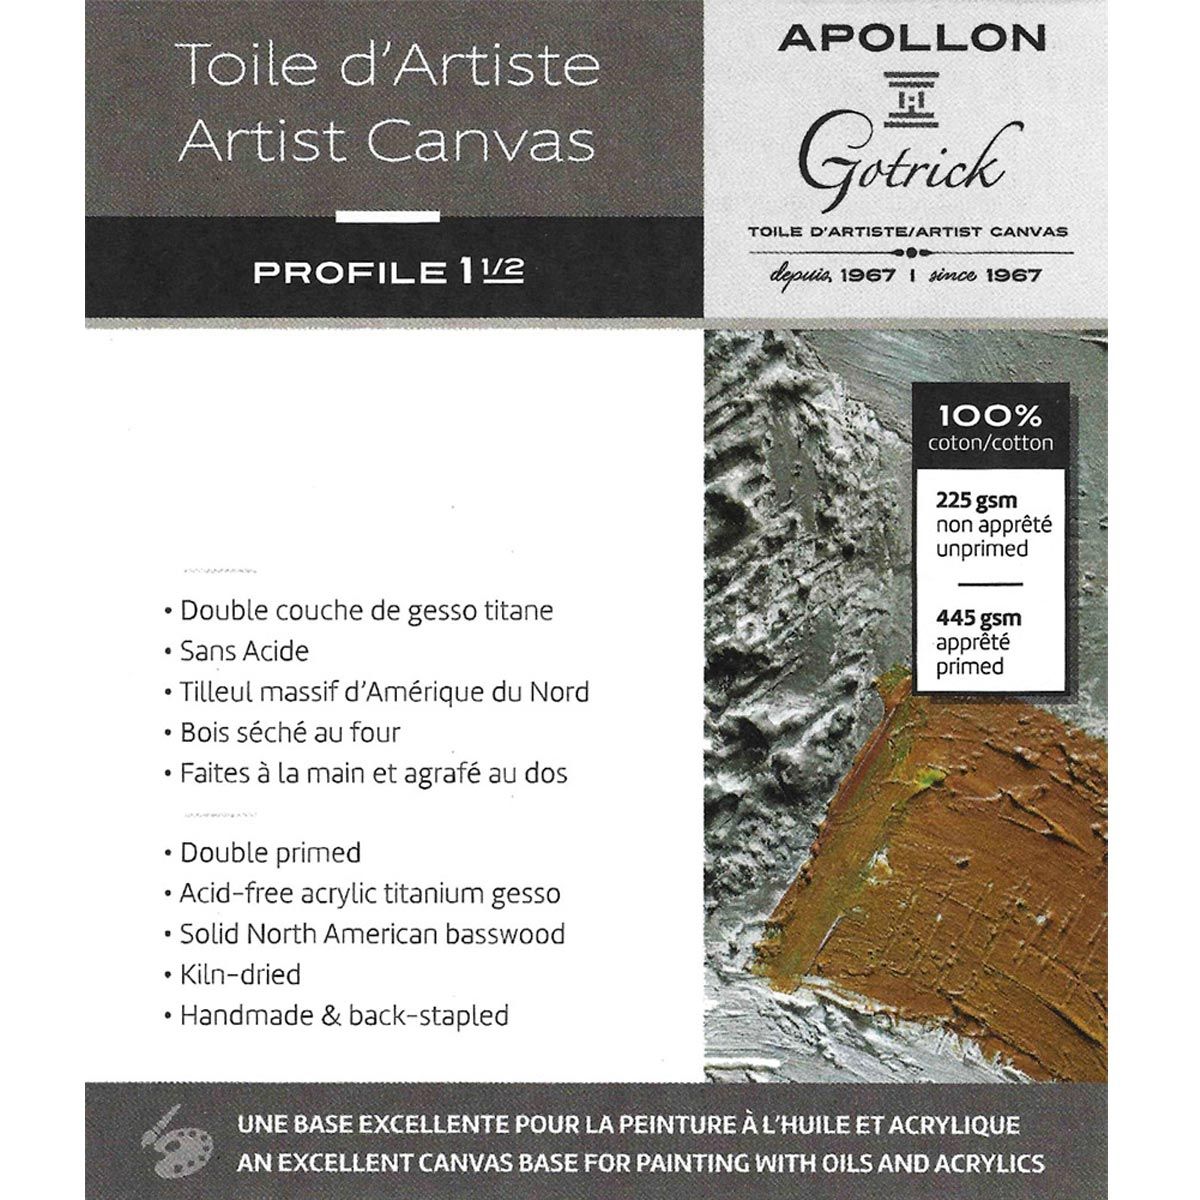 Apollon Gotrick Gallery Artist Canvas Profile 1½" - 6" x 6"